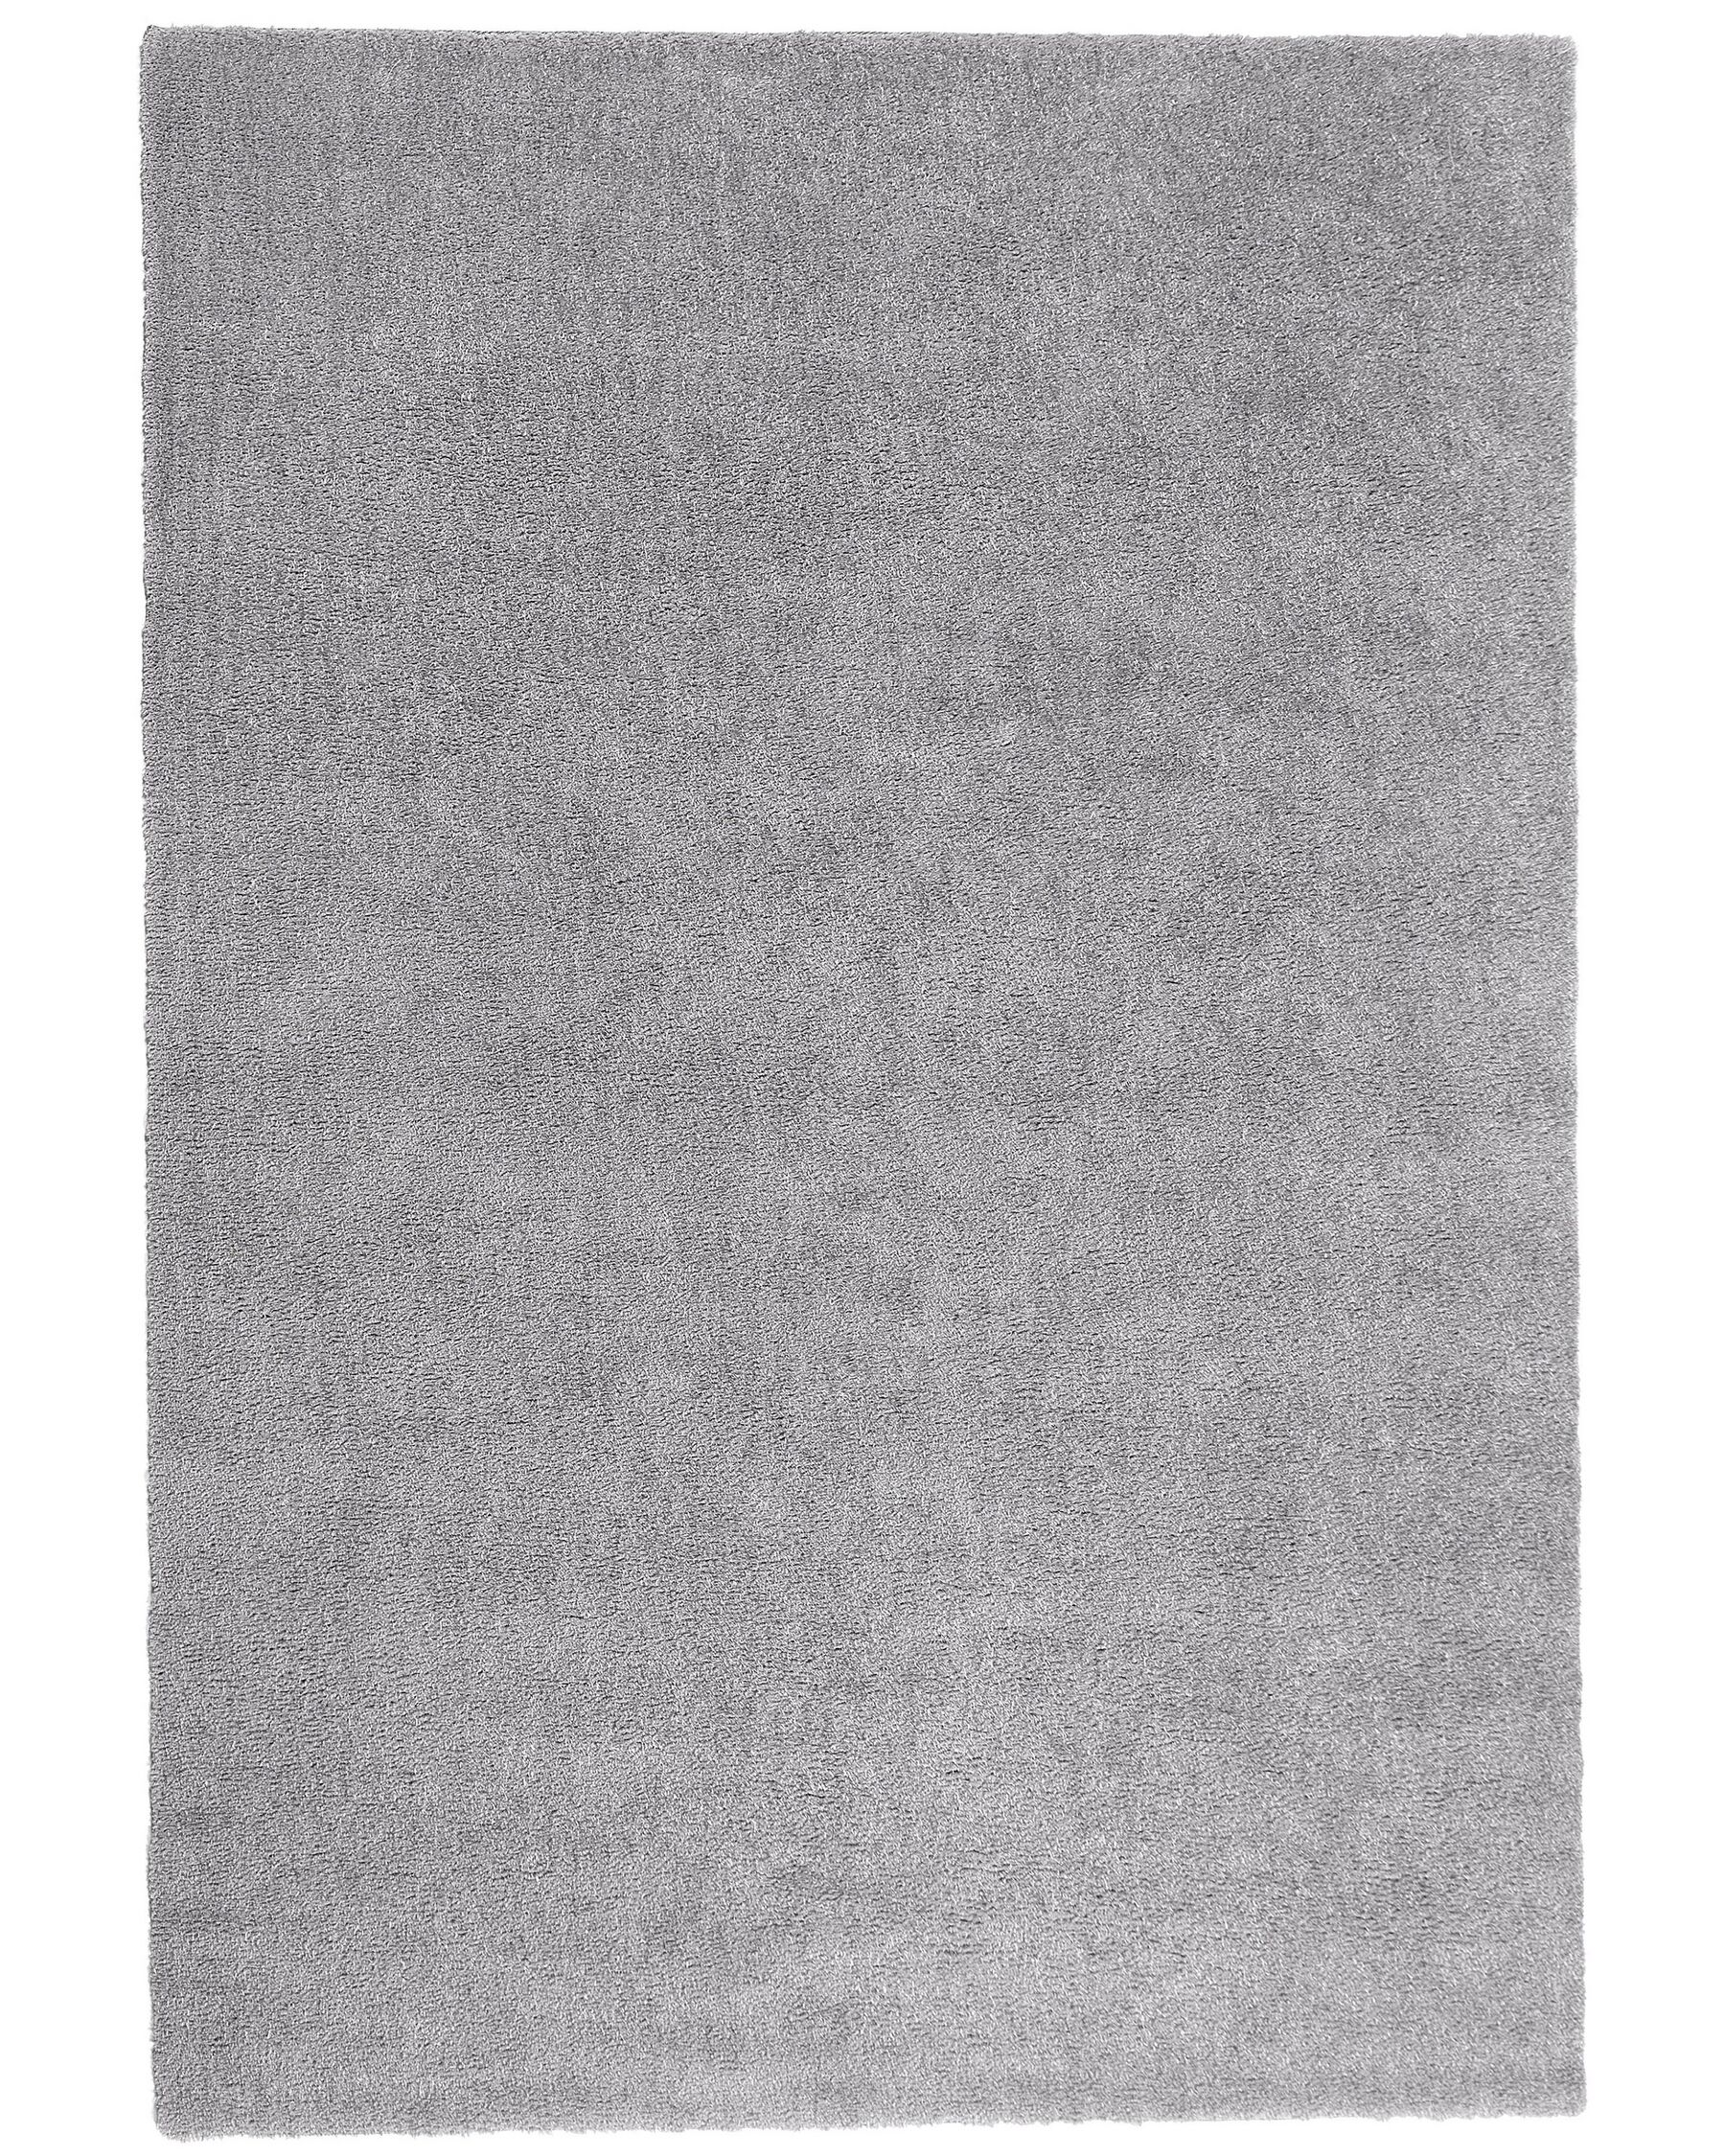 Tappeto shaggy grigio chiaro 140 x 200 cm DEMRE_683522